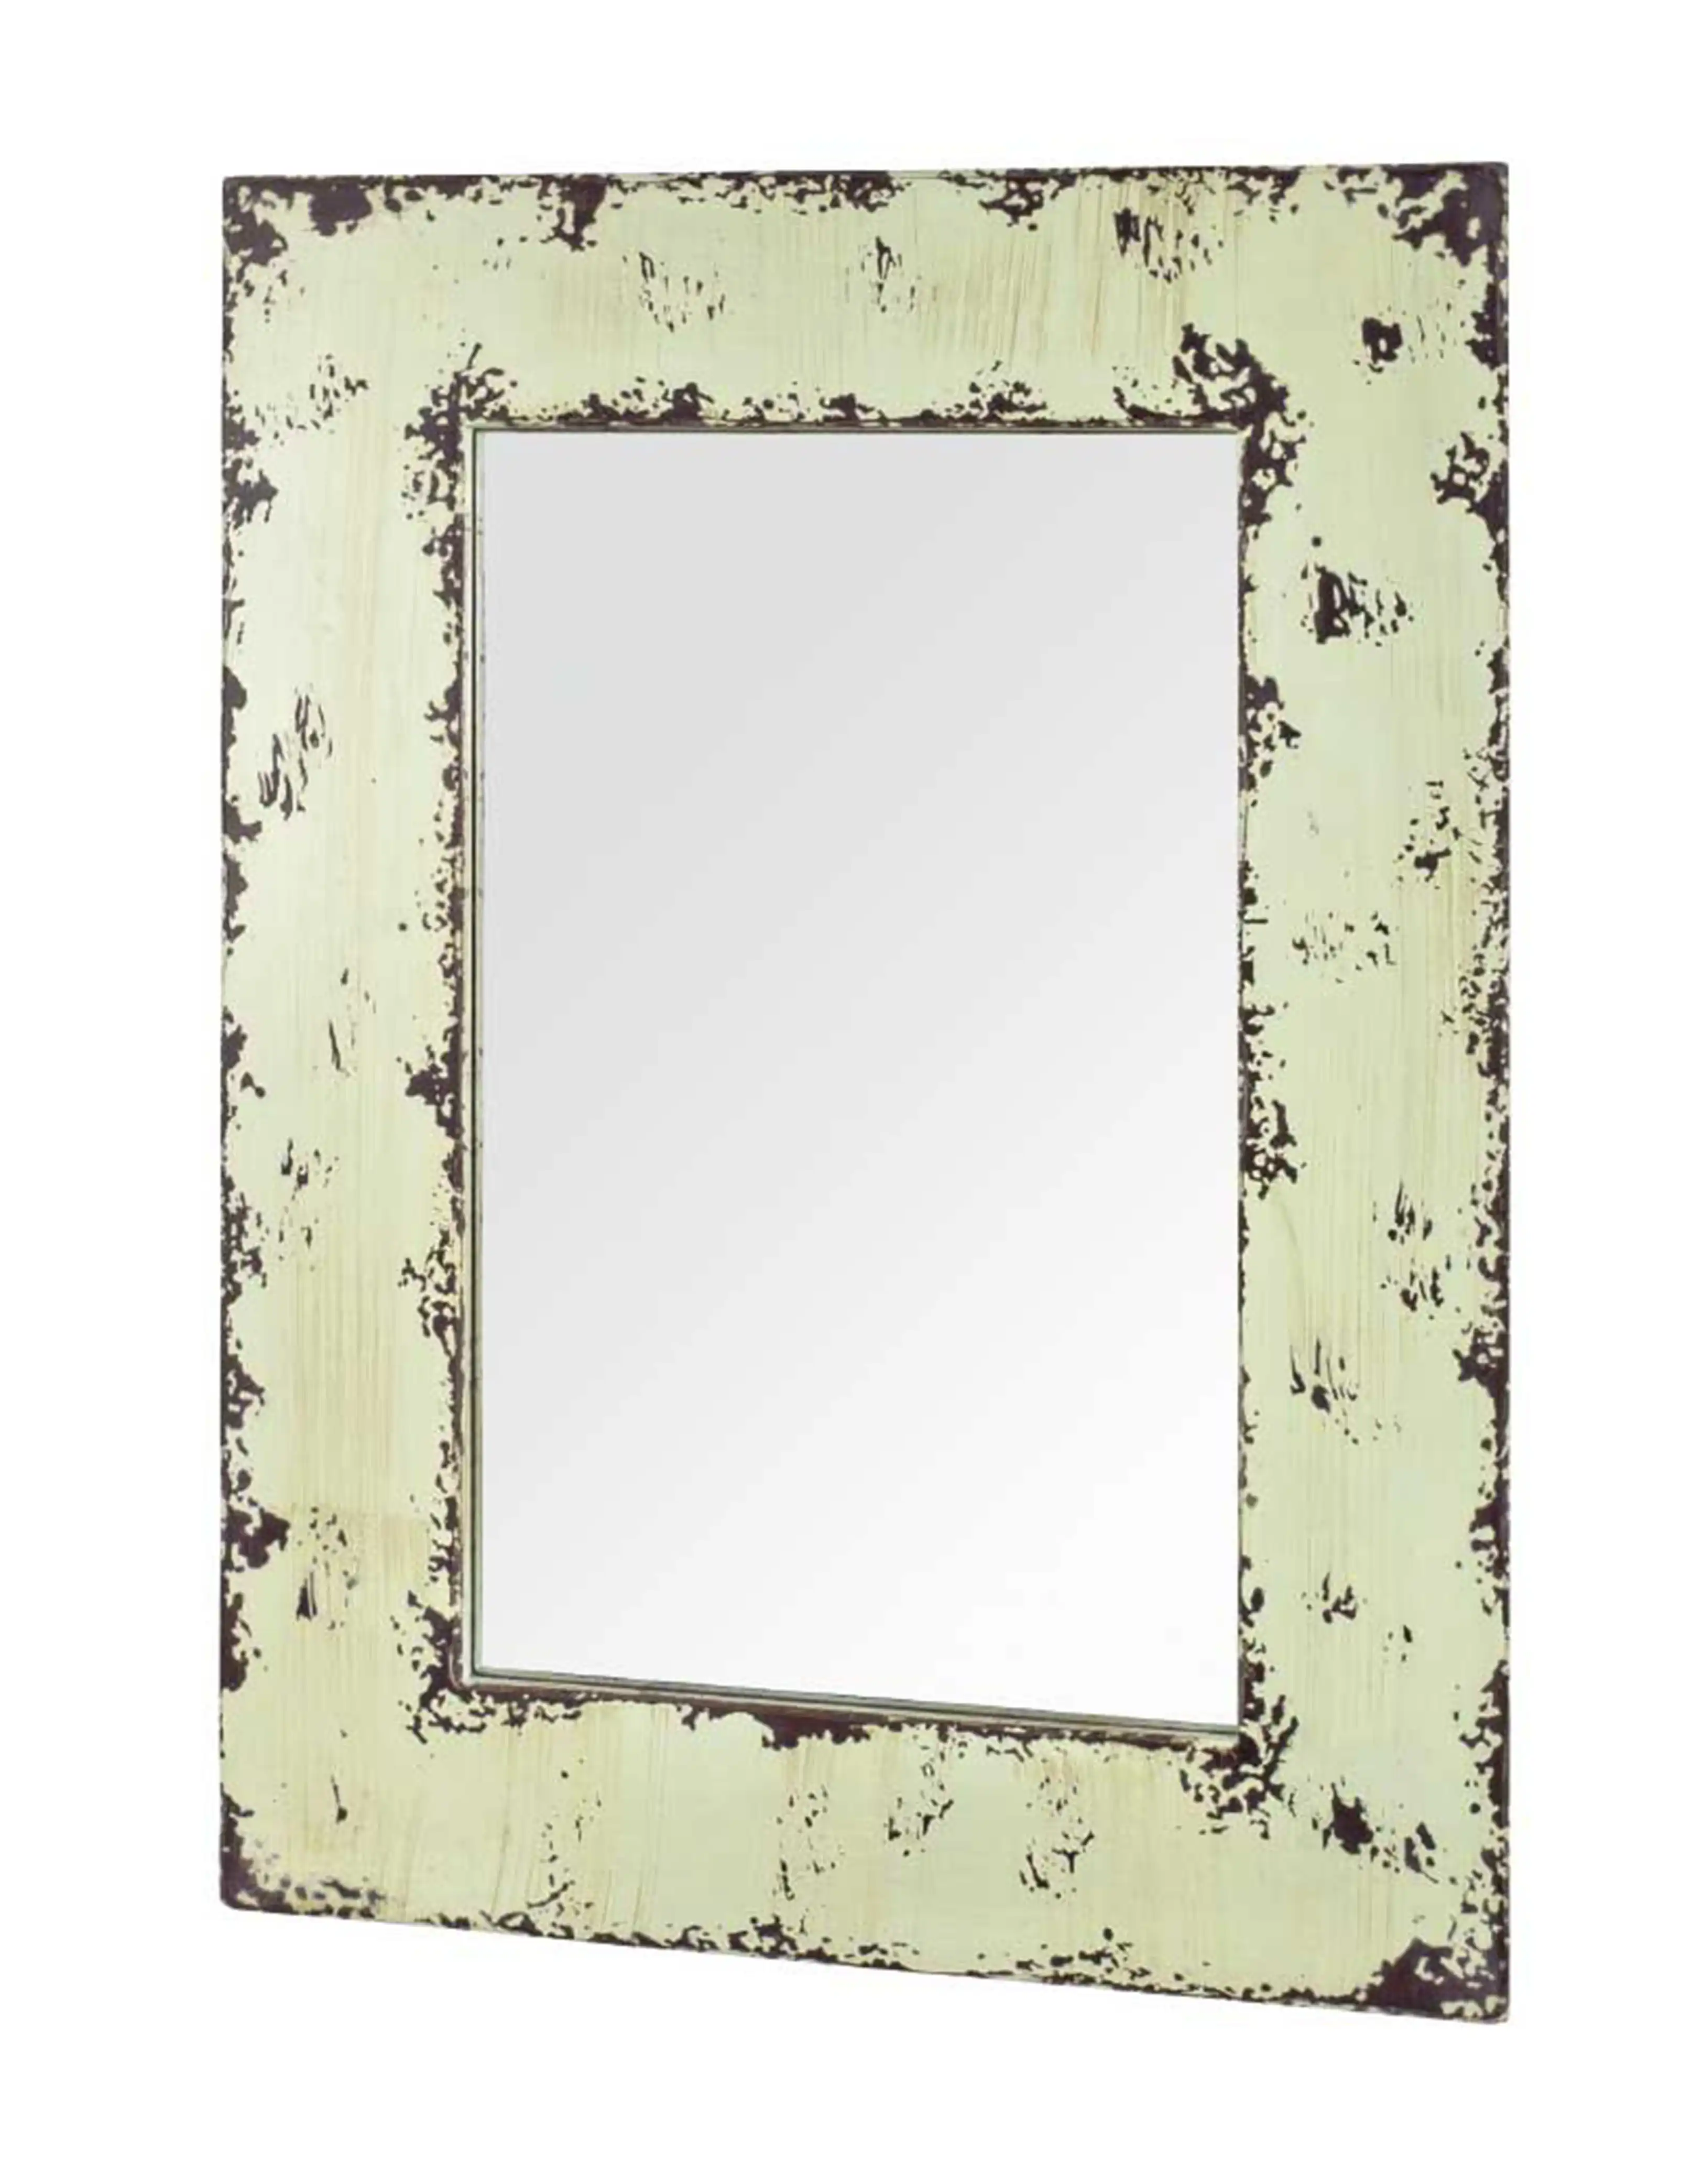 Mirror Frame - popular handicrafts